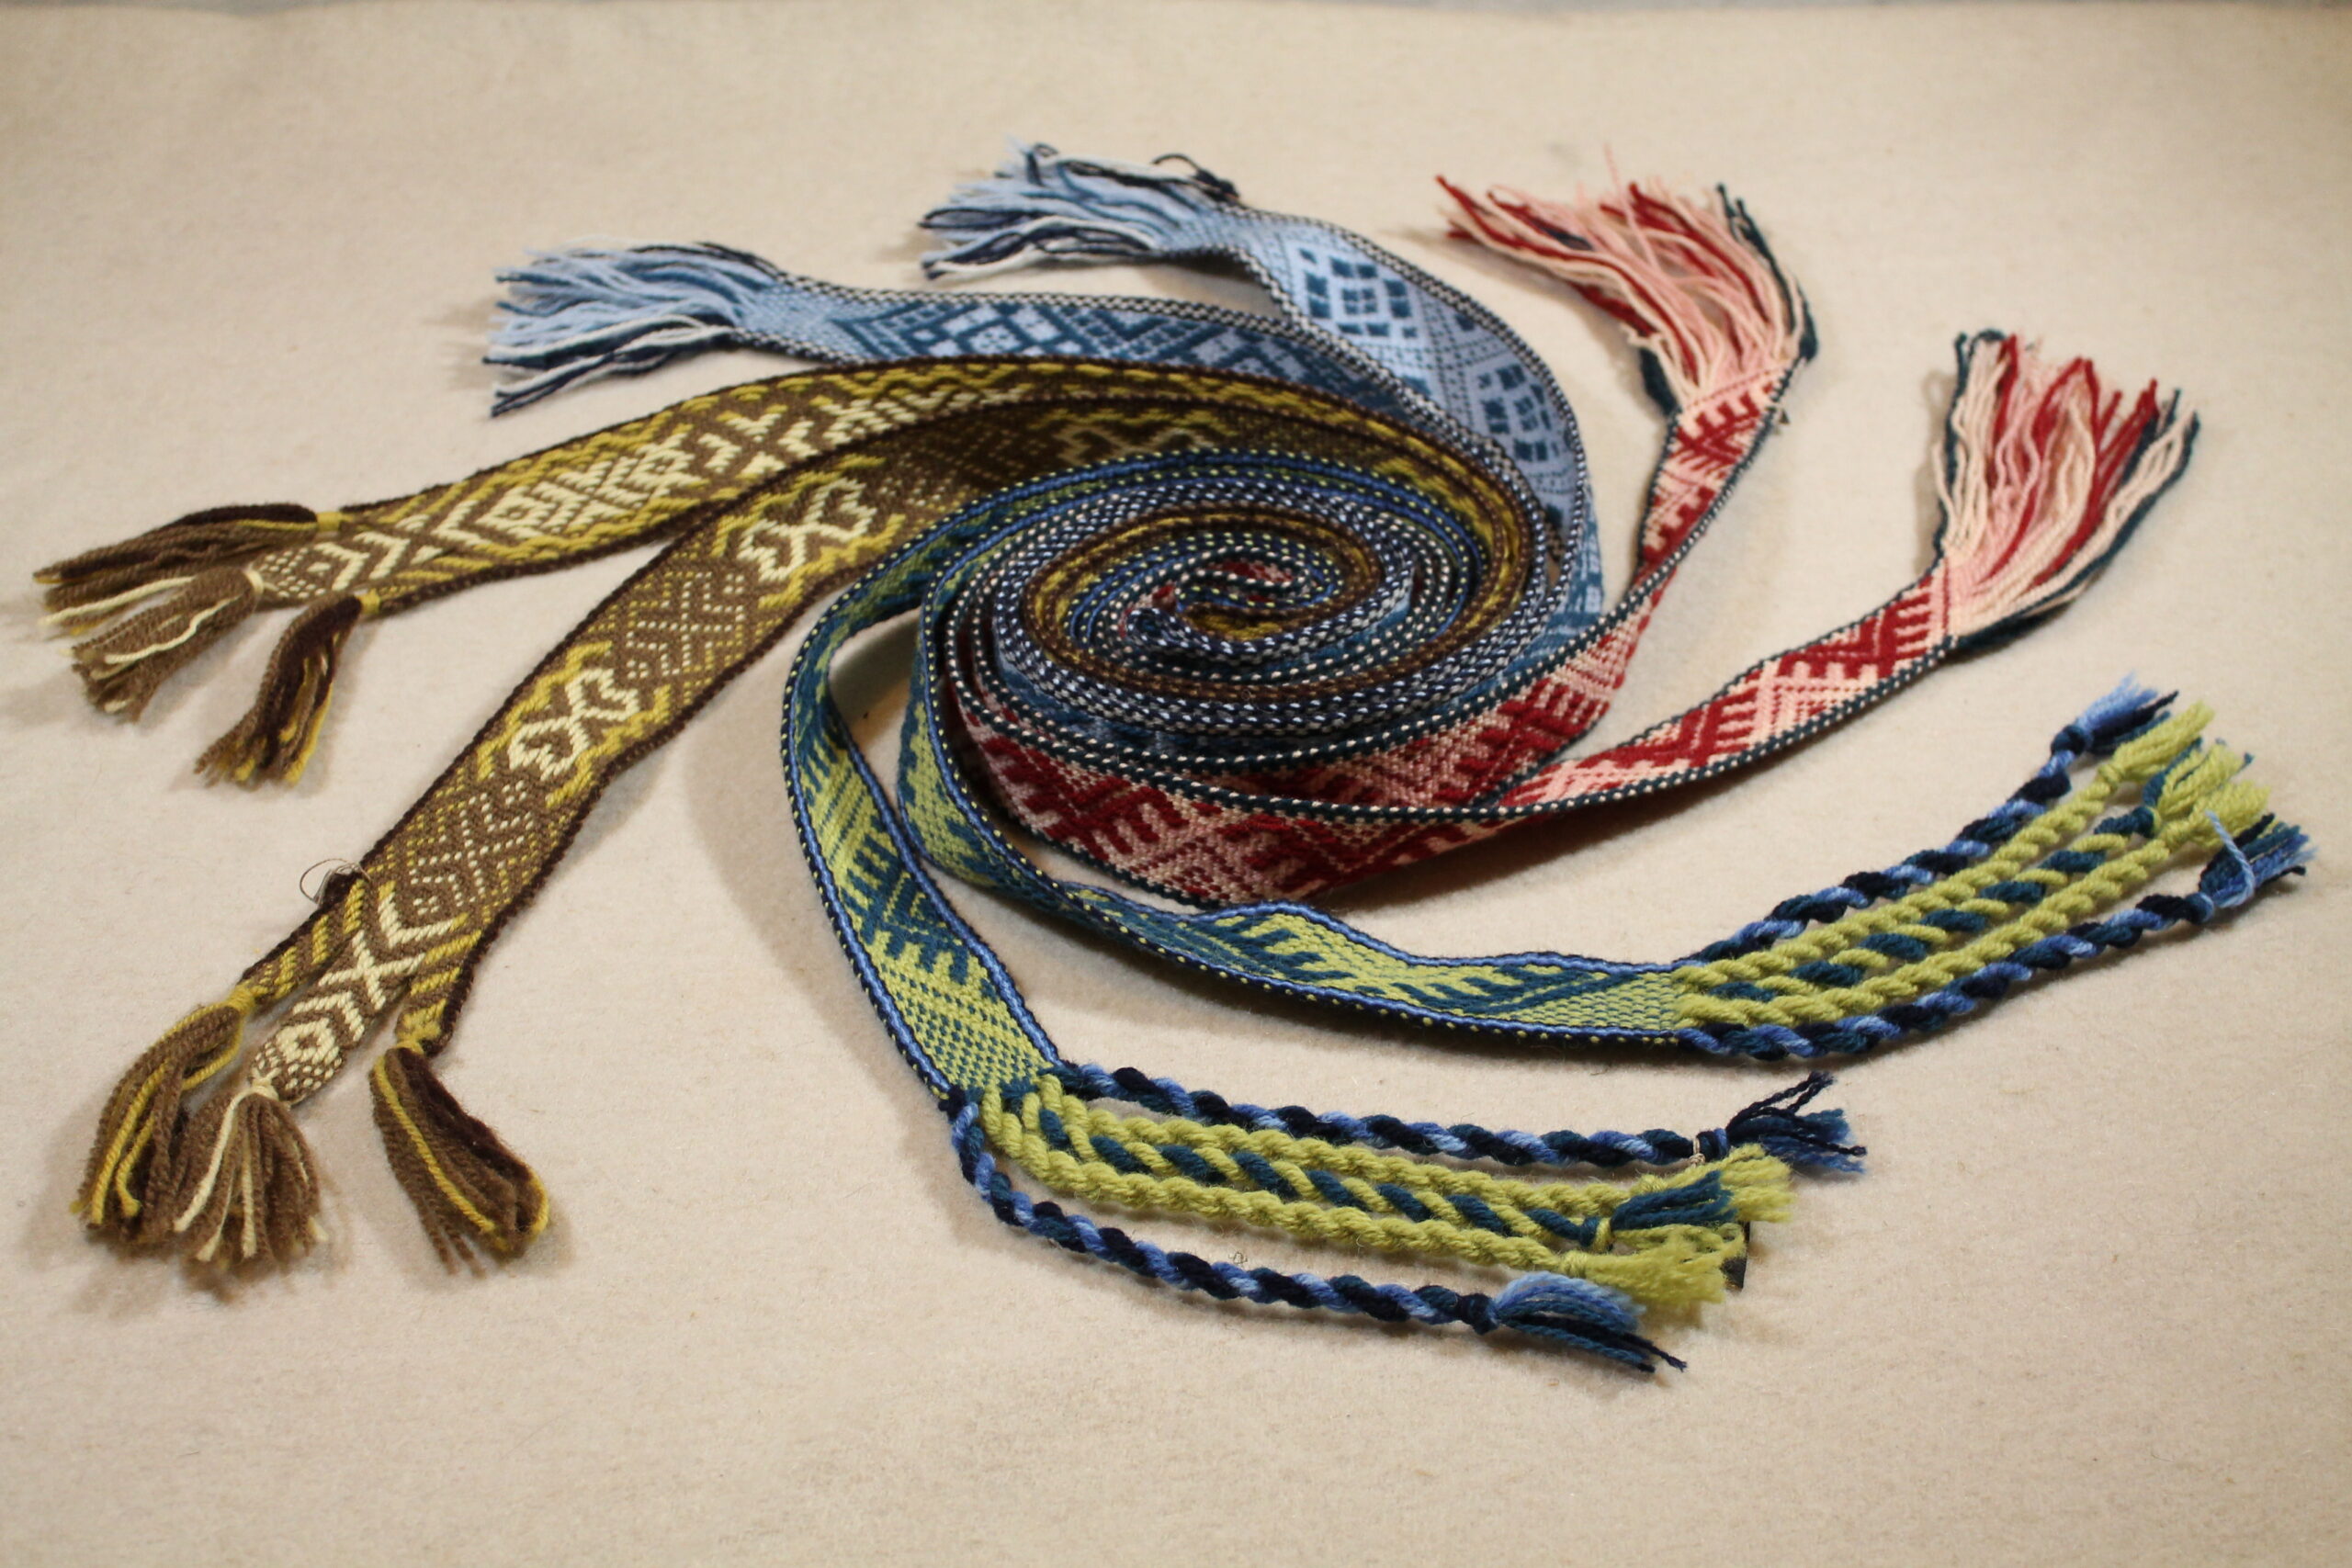 woven belts artistically arranged